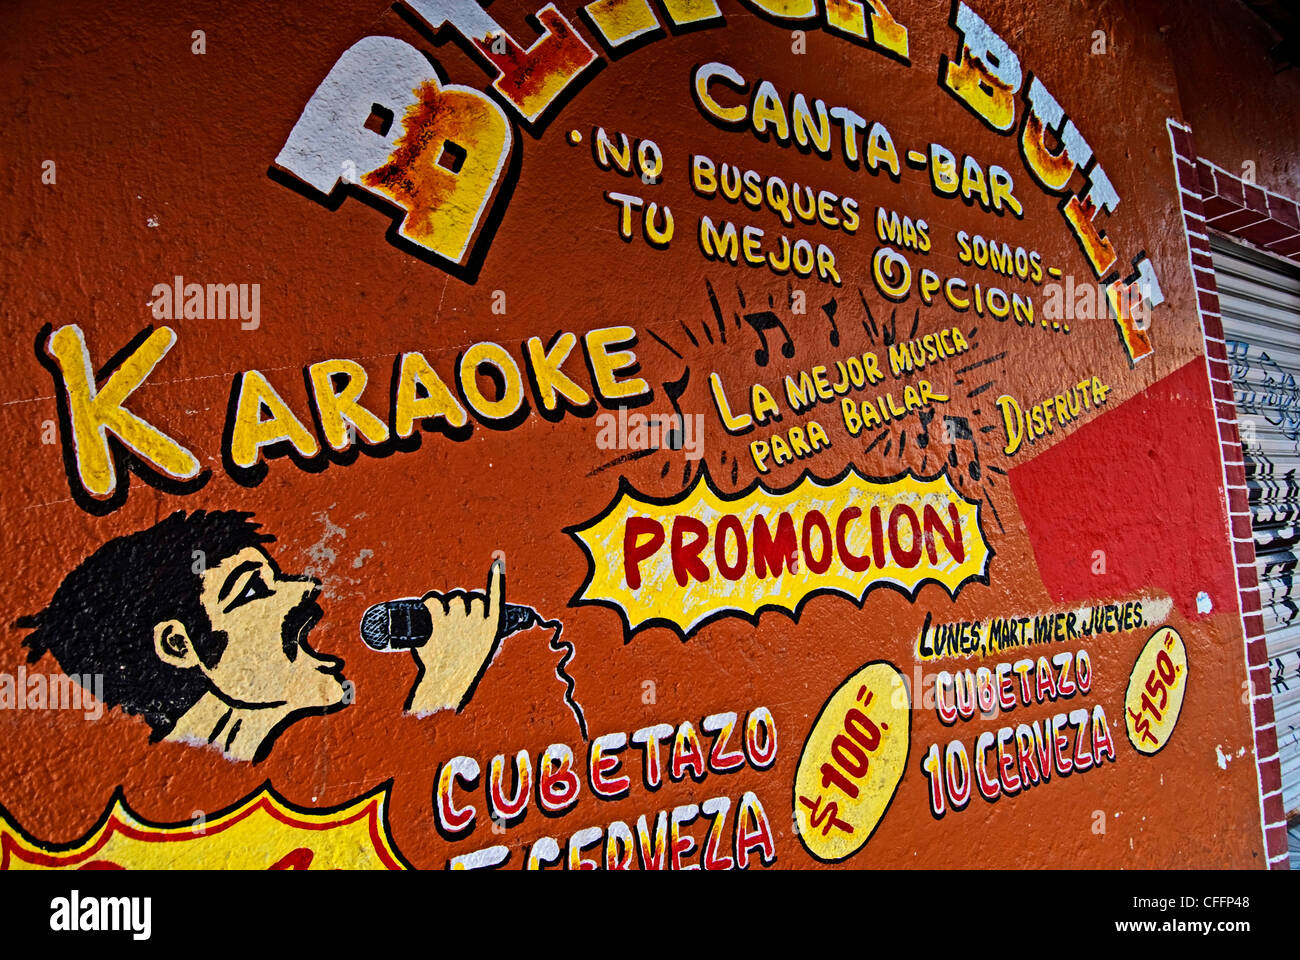 Il murale sulla parete del Black Bull pubblicità Canta-Bar karaoke in downtown zihuatanejo, Messico Foto Stock